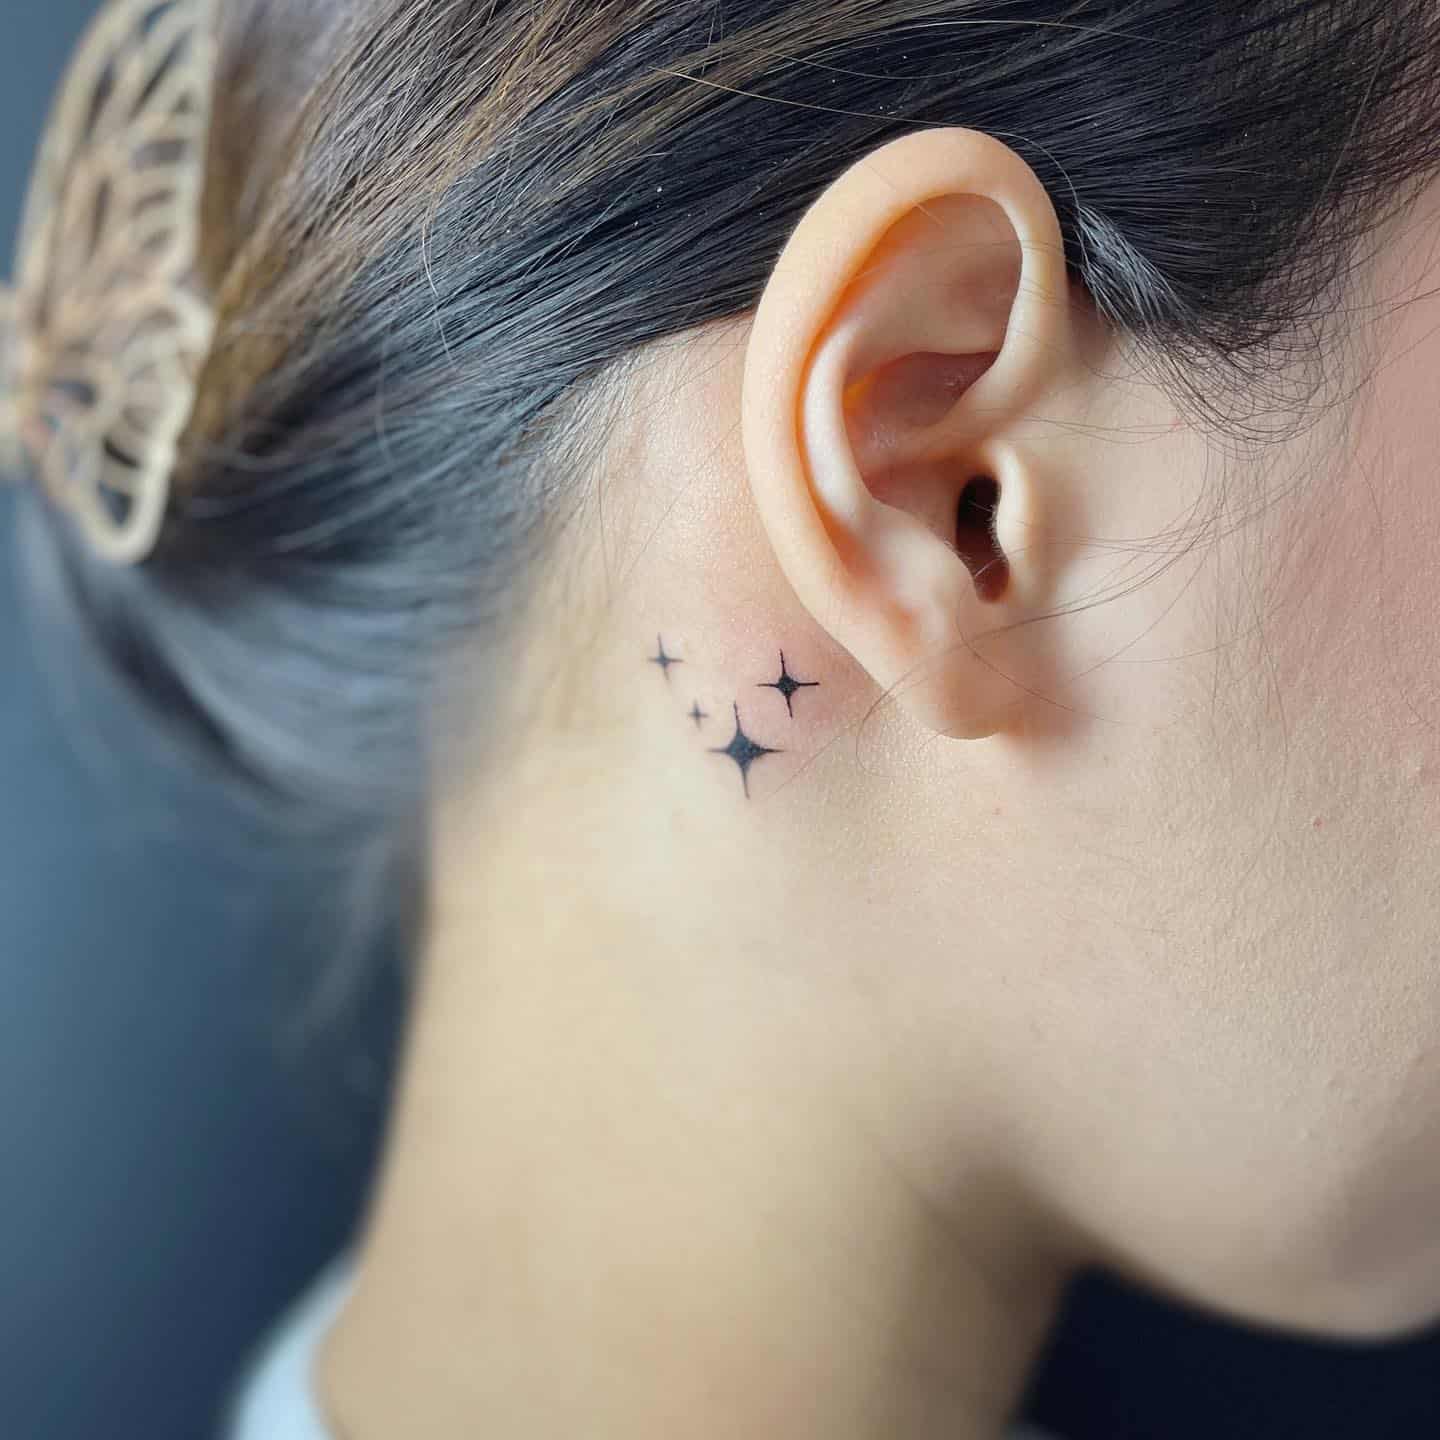 Small star tattoos by h8ns tattoo